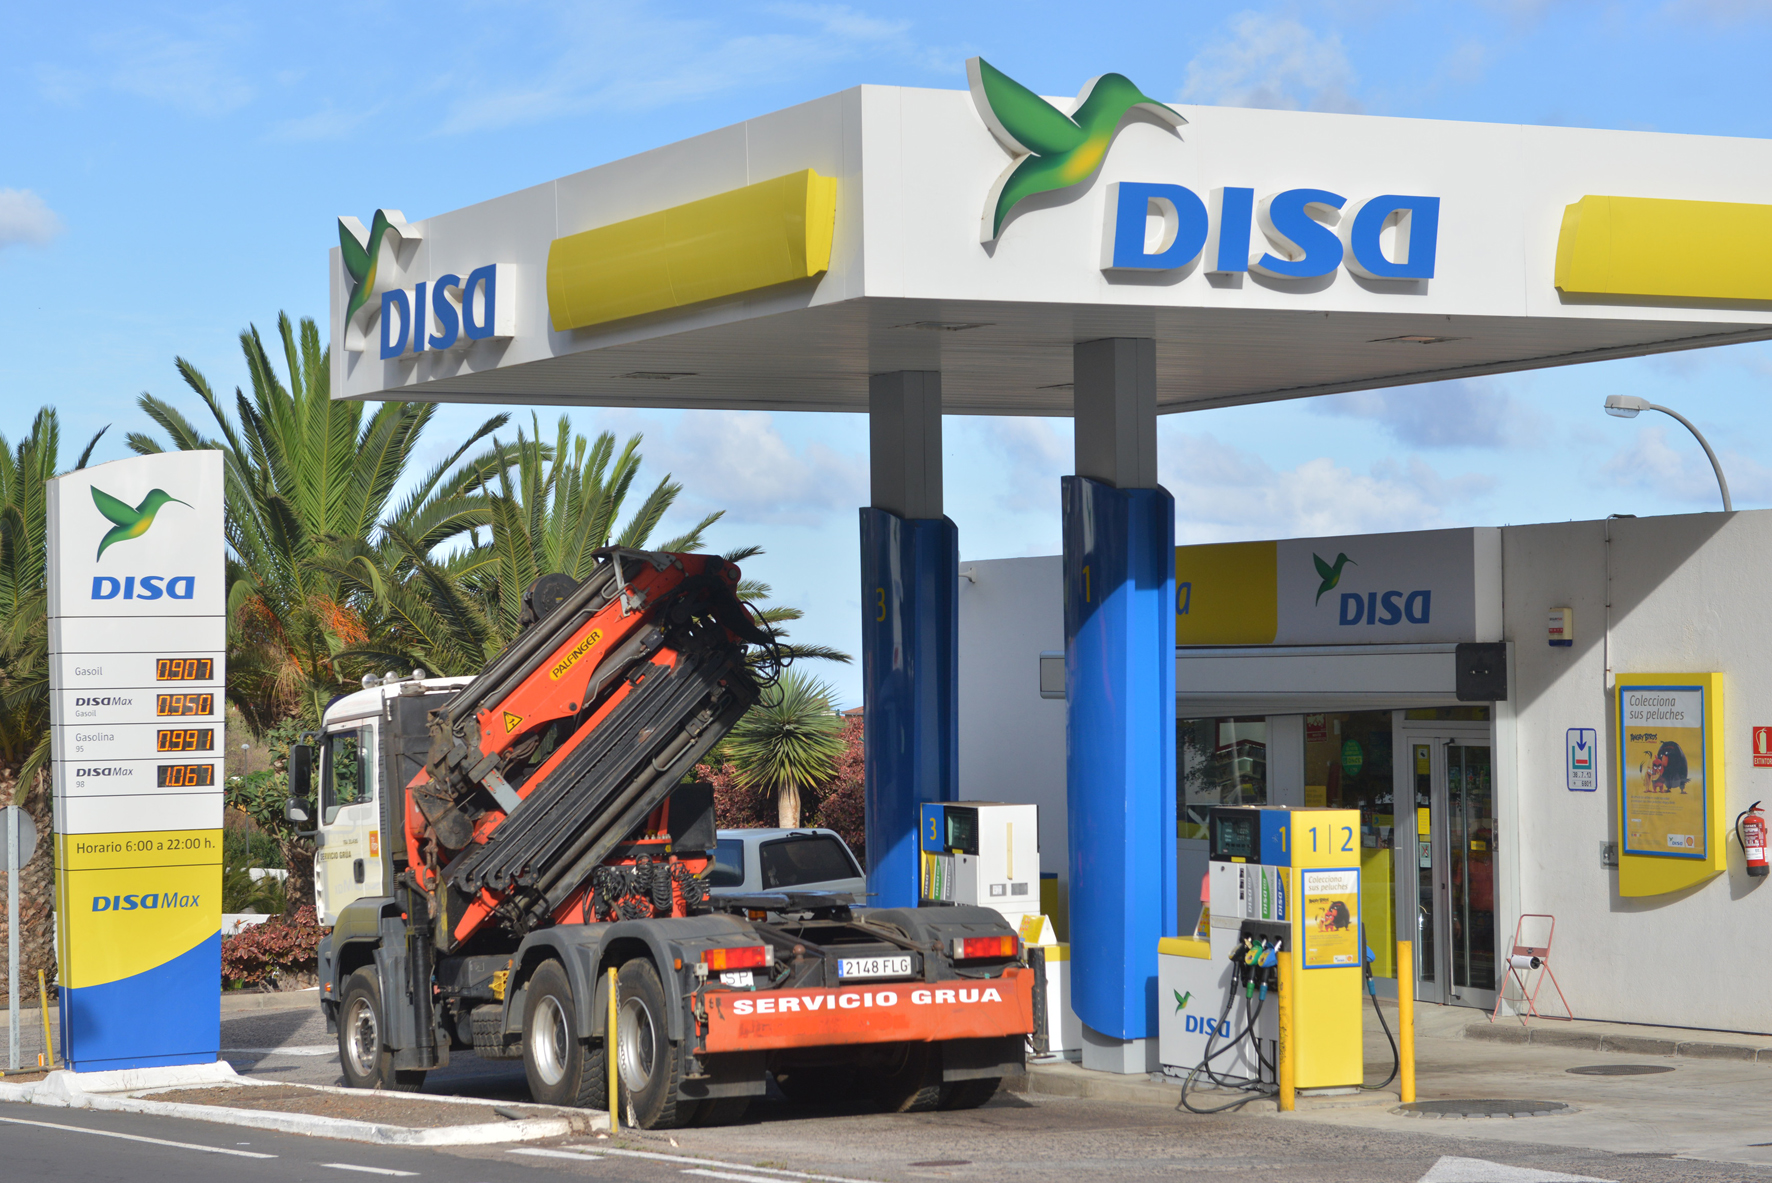 El próximo lunes entrará en vigor la bonificación de 20 céntimos por litro de combustible en El Hierro, La Gomera y La Palma